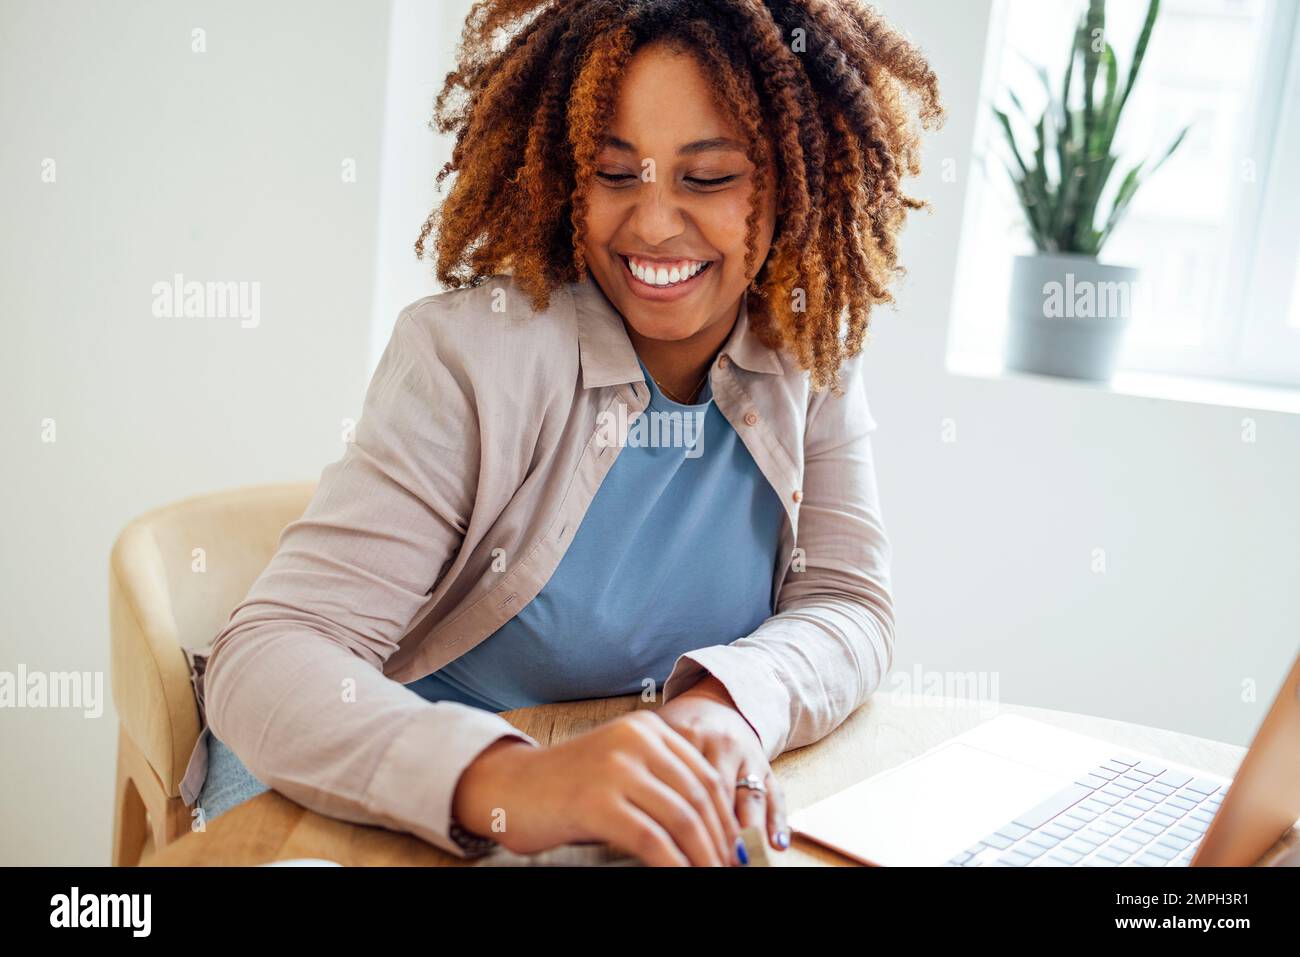 Una giovane afroamericana sta lavorando su un computer portatile. Una studentessa focalizzata sta guardando lo schermo del computer e guardando il webinar o facendo videochat Foto Stock